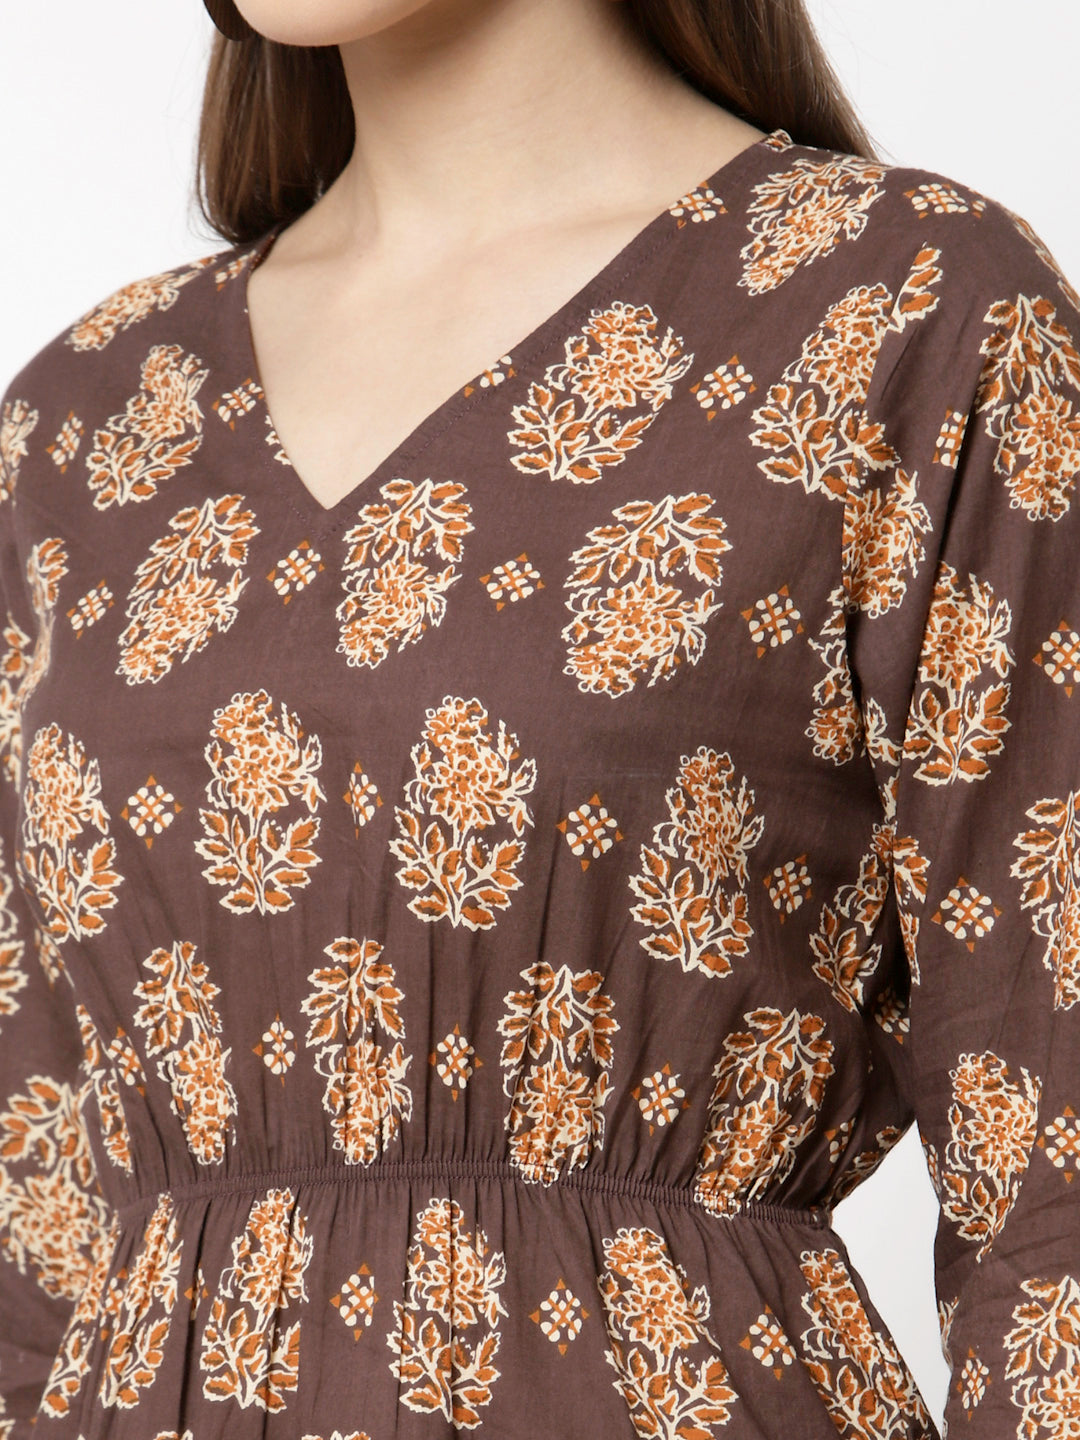 Women Brown Printed Cotton Top by Myshka (1 Pc Set)